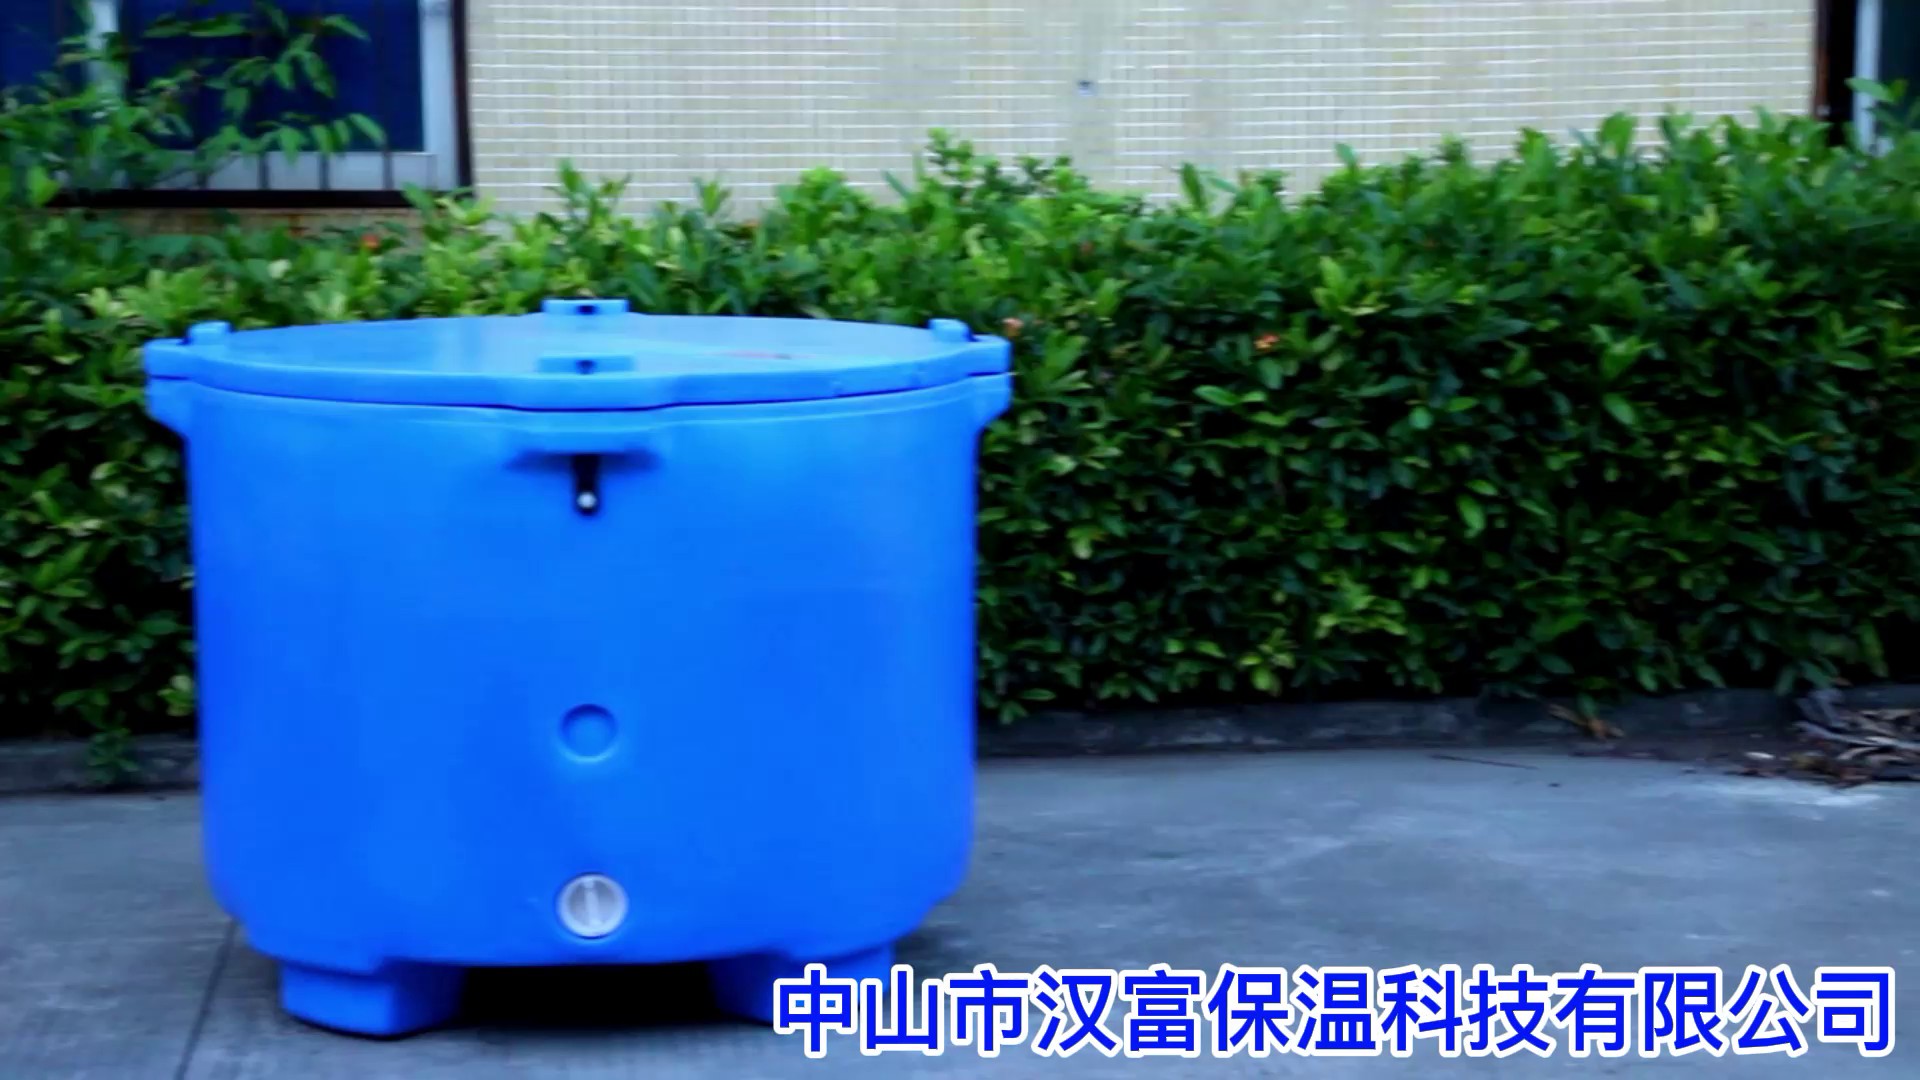 贵州耐低温-78摄氏度保温箱,保温箱